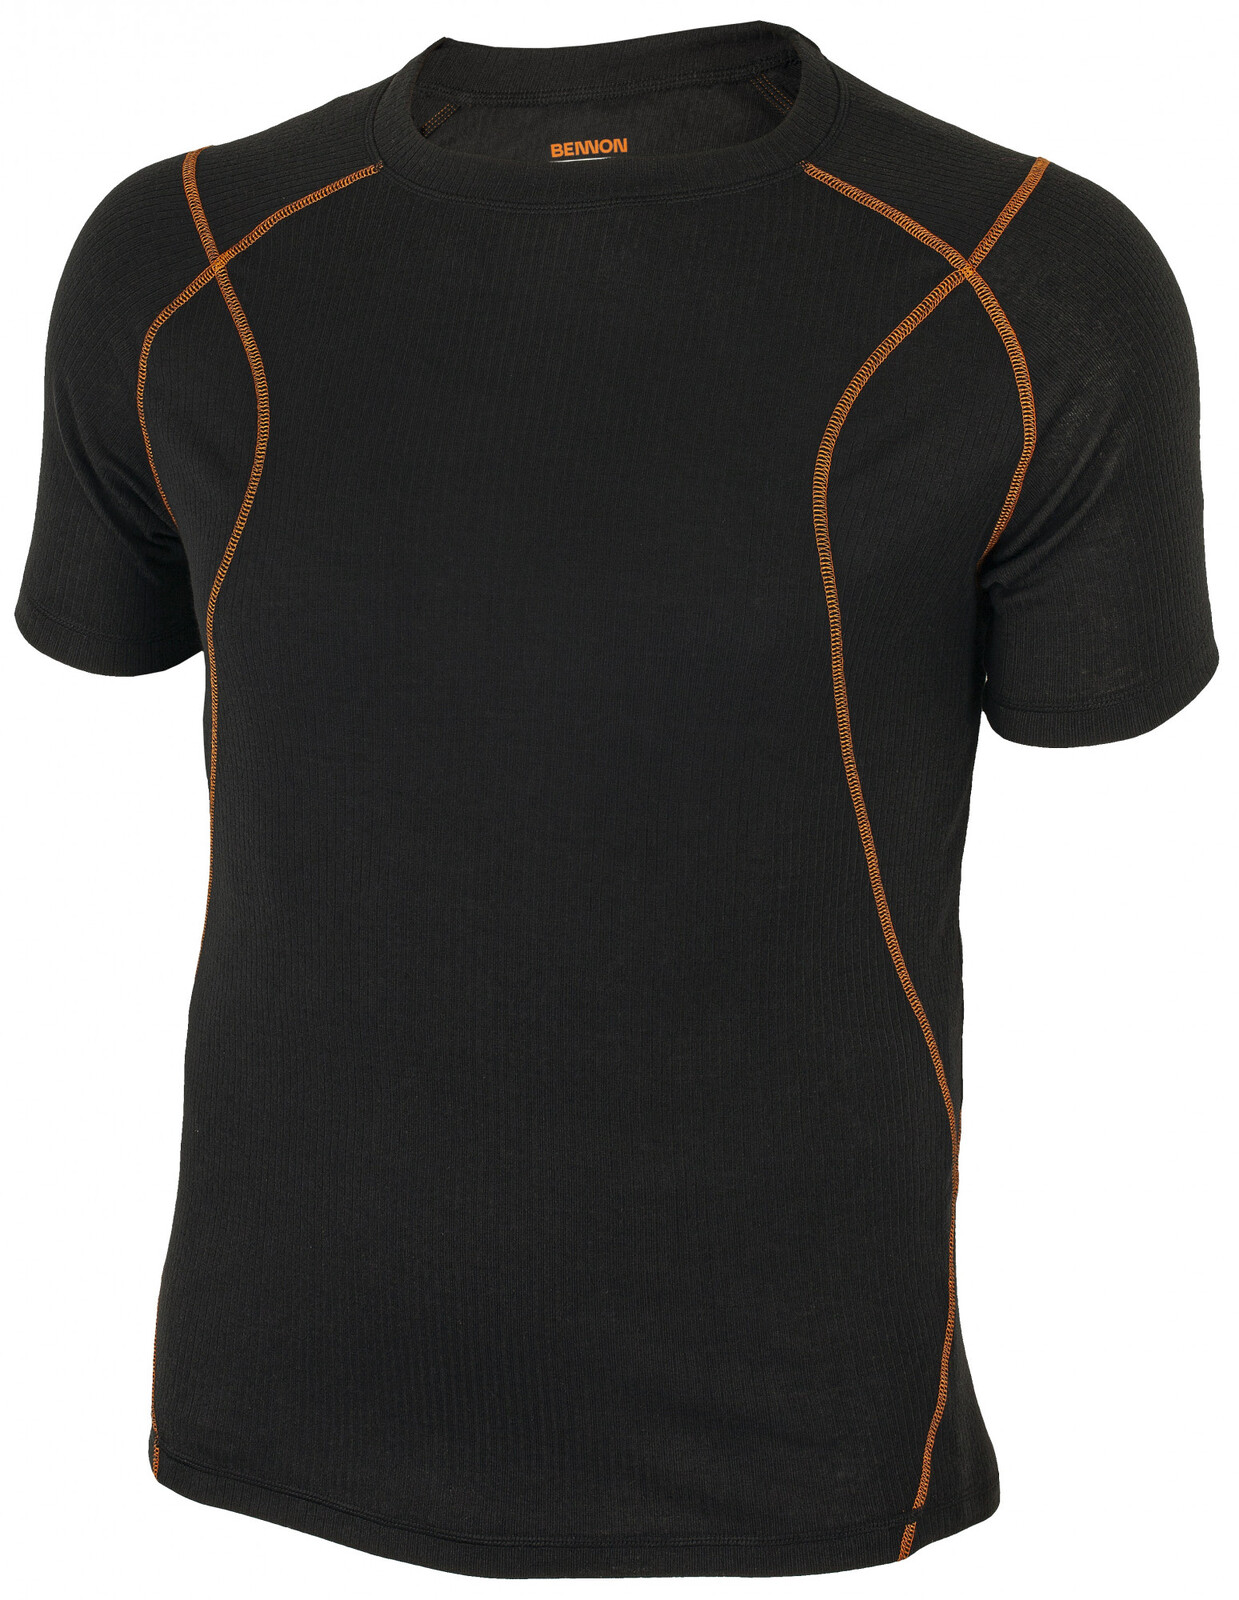 Pánske funkčné termo tričko s krátkym rukávom Bennon Artemios - veľkosť: S, farba: čierna/oranžová